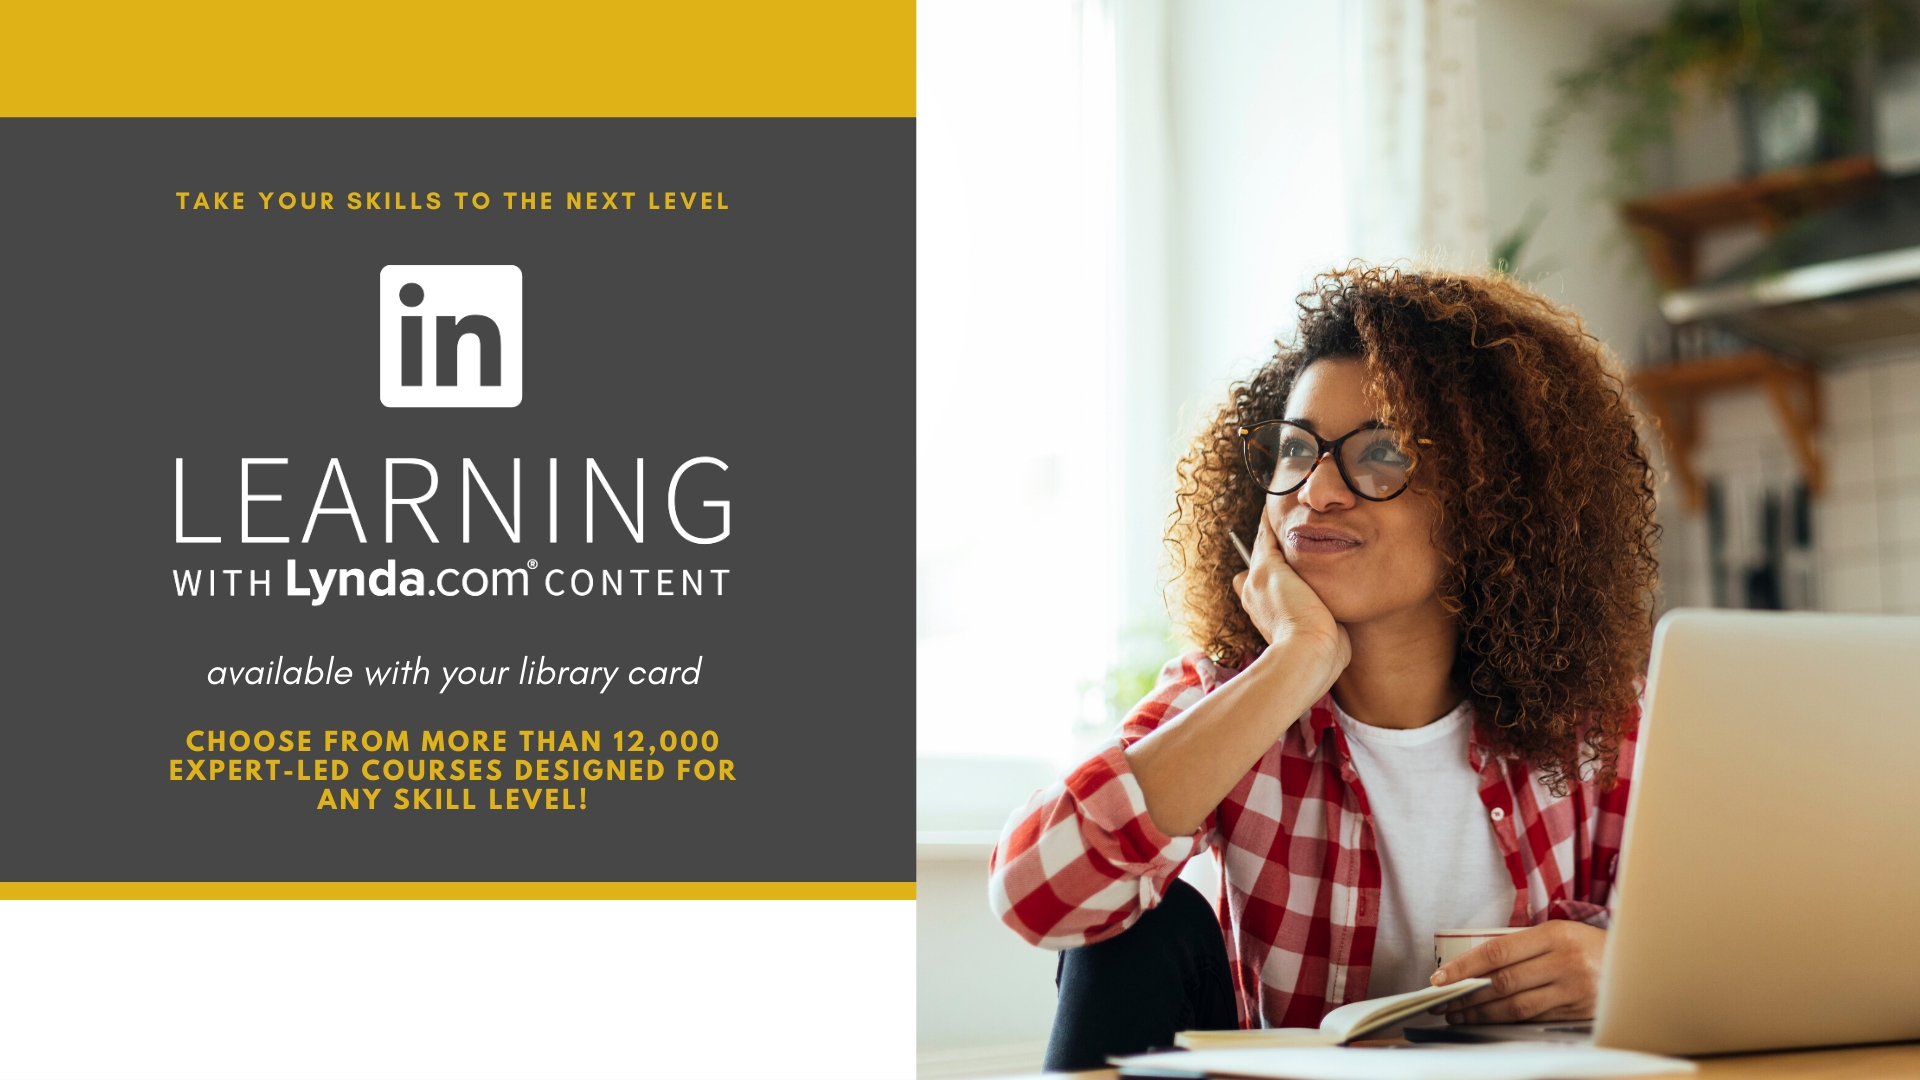 Image for promoting LinkedIn Learning on digital signage